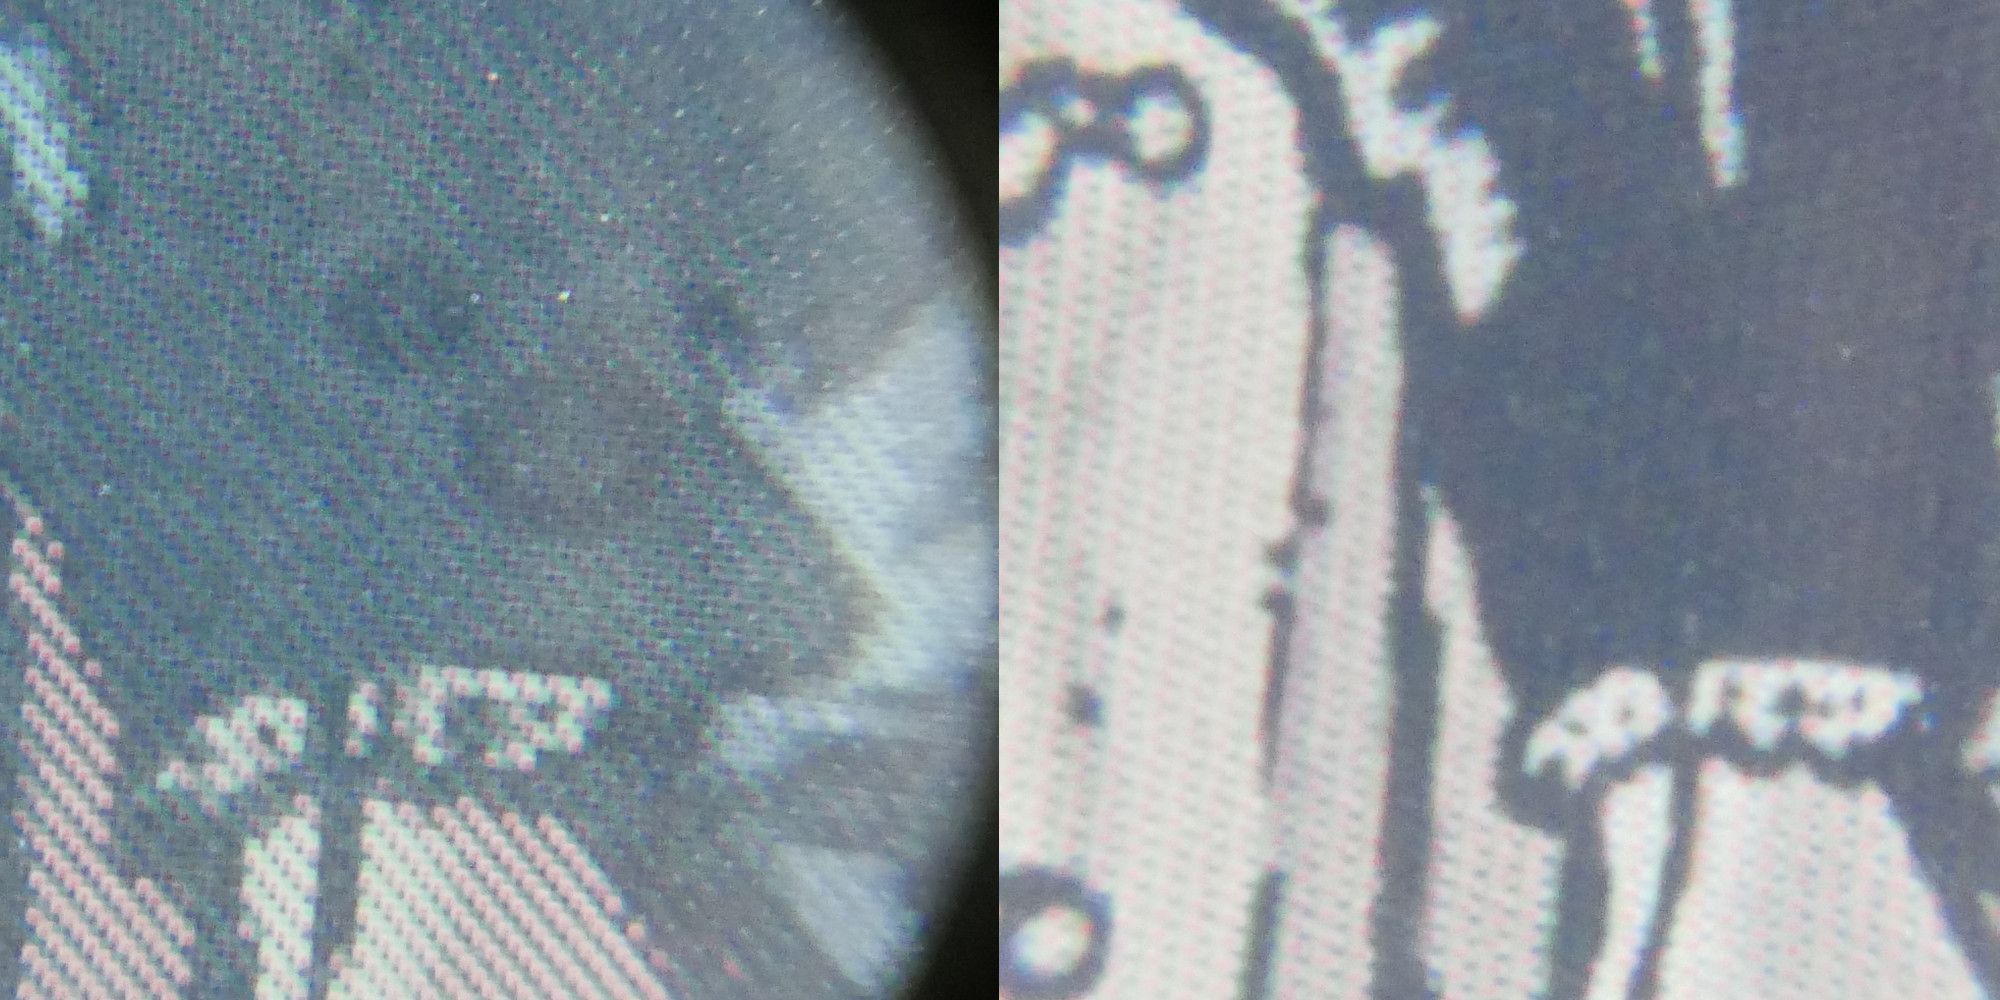 des pixels under magnifying glass